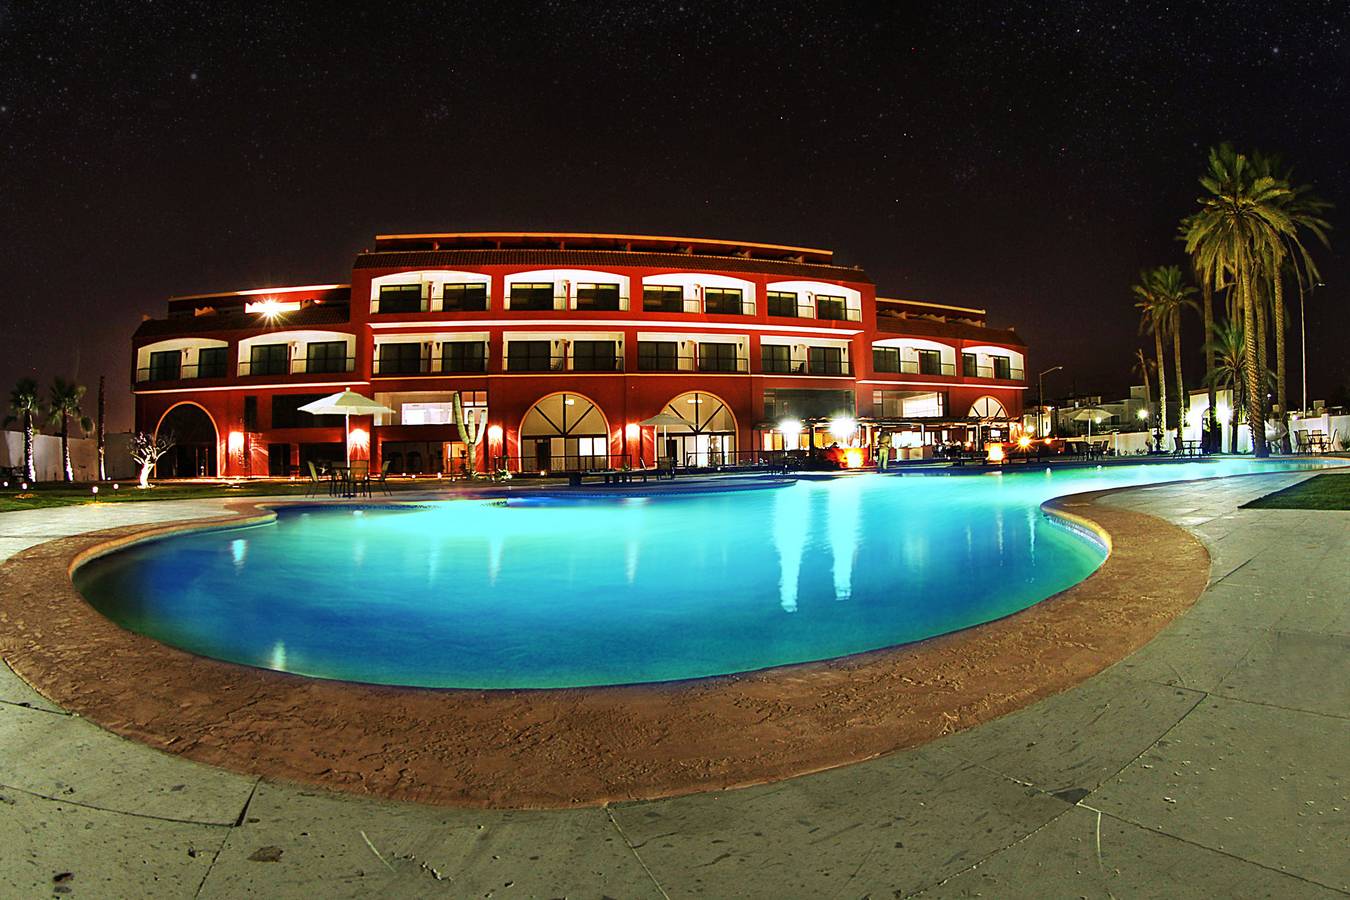 La Paz Hotel | Hotels in La Paz, Mexico | La Posada La Paz